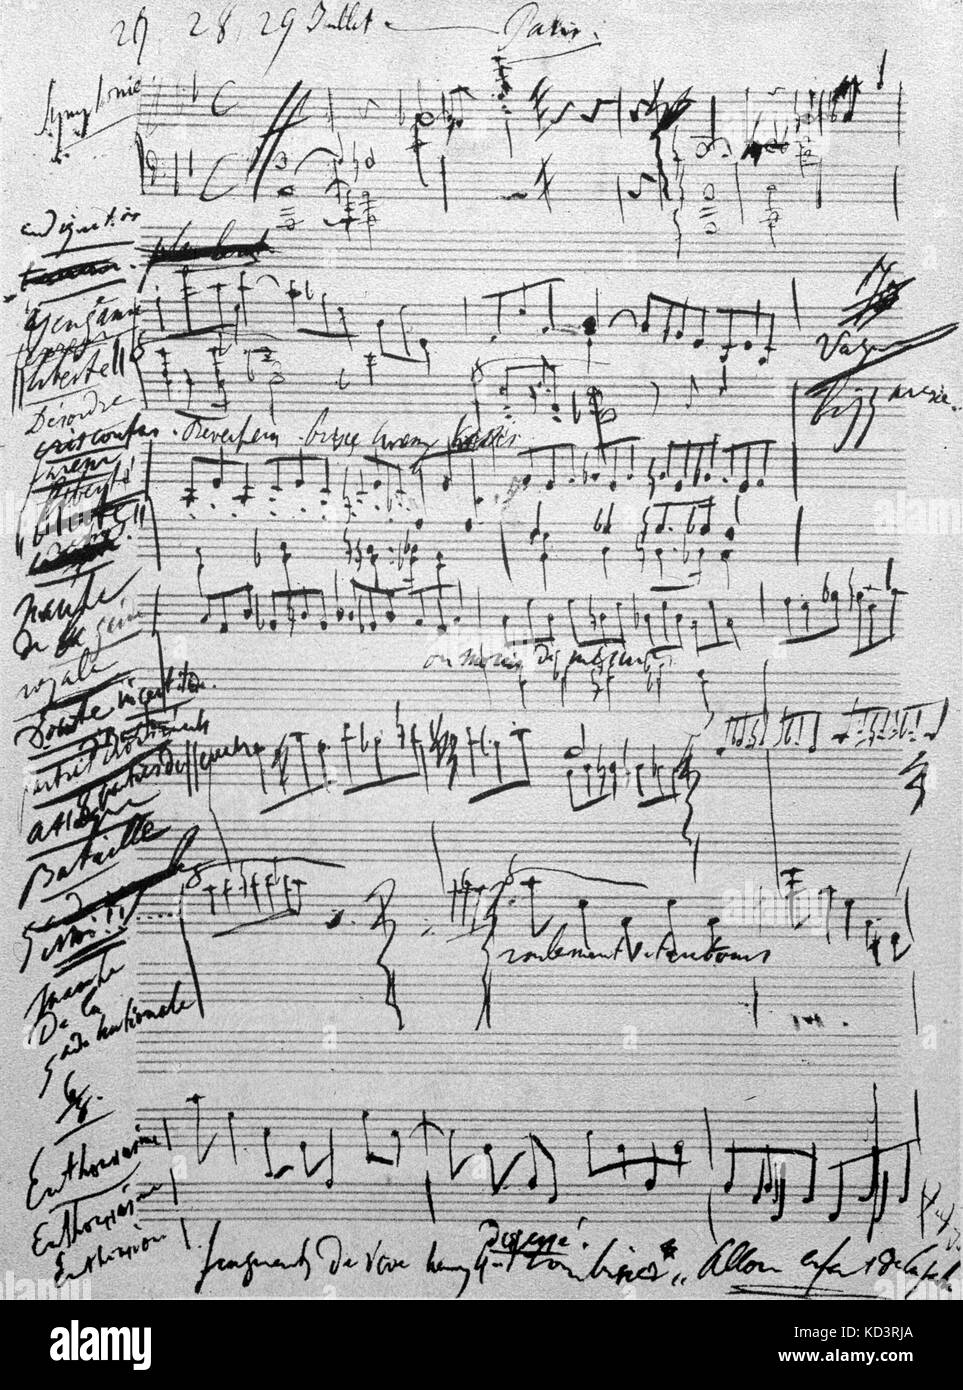 LISZT, Franz - Erste Entwurf (prima bozza) di rivoluzione Sinfonia in Liszt ungherese della grafia pianista e compositore (1811-1886) Foto Stock